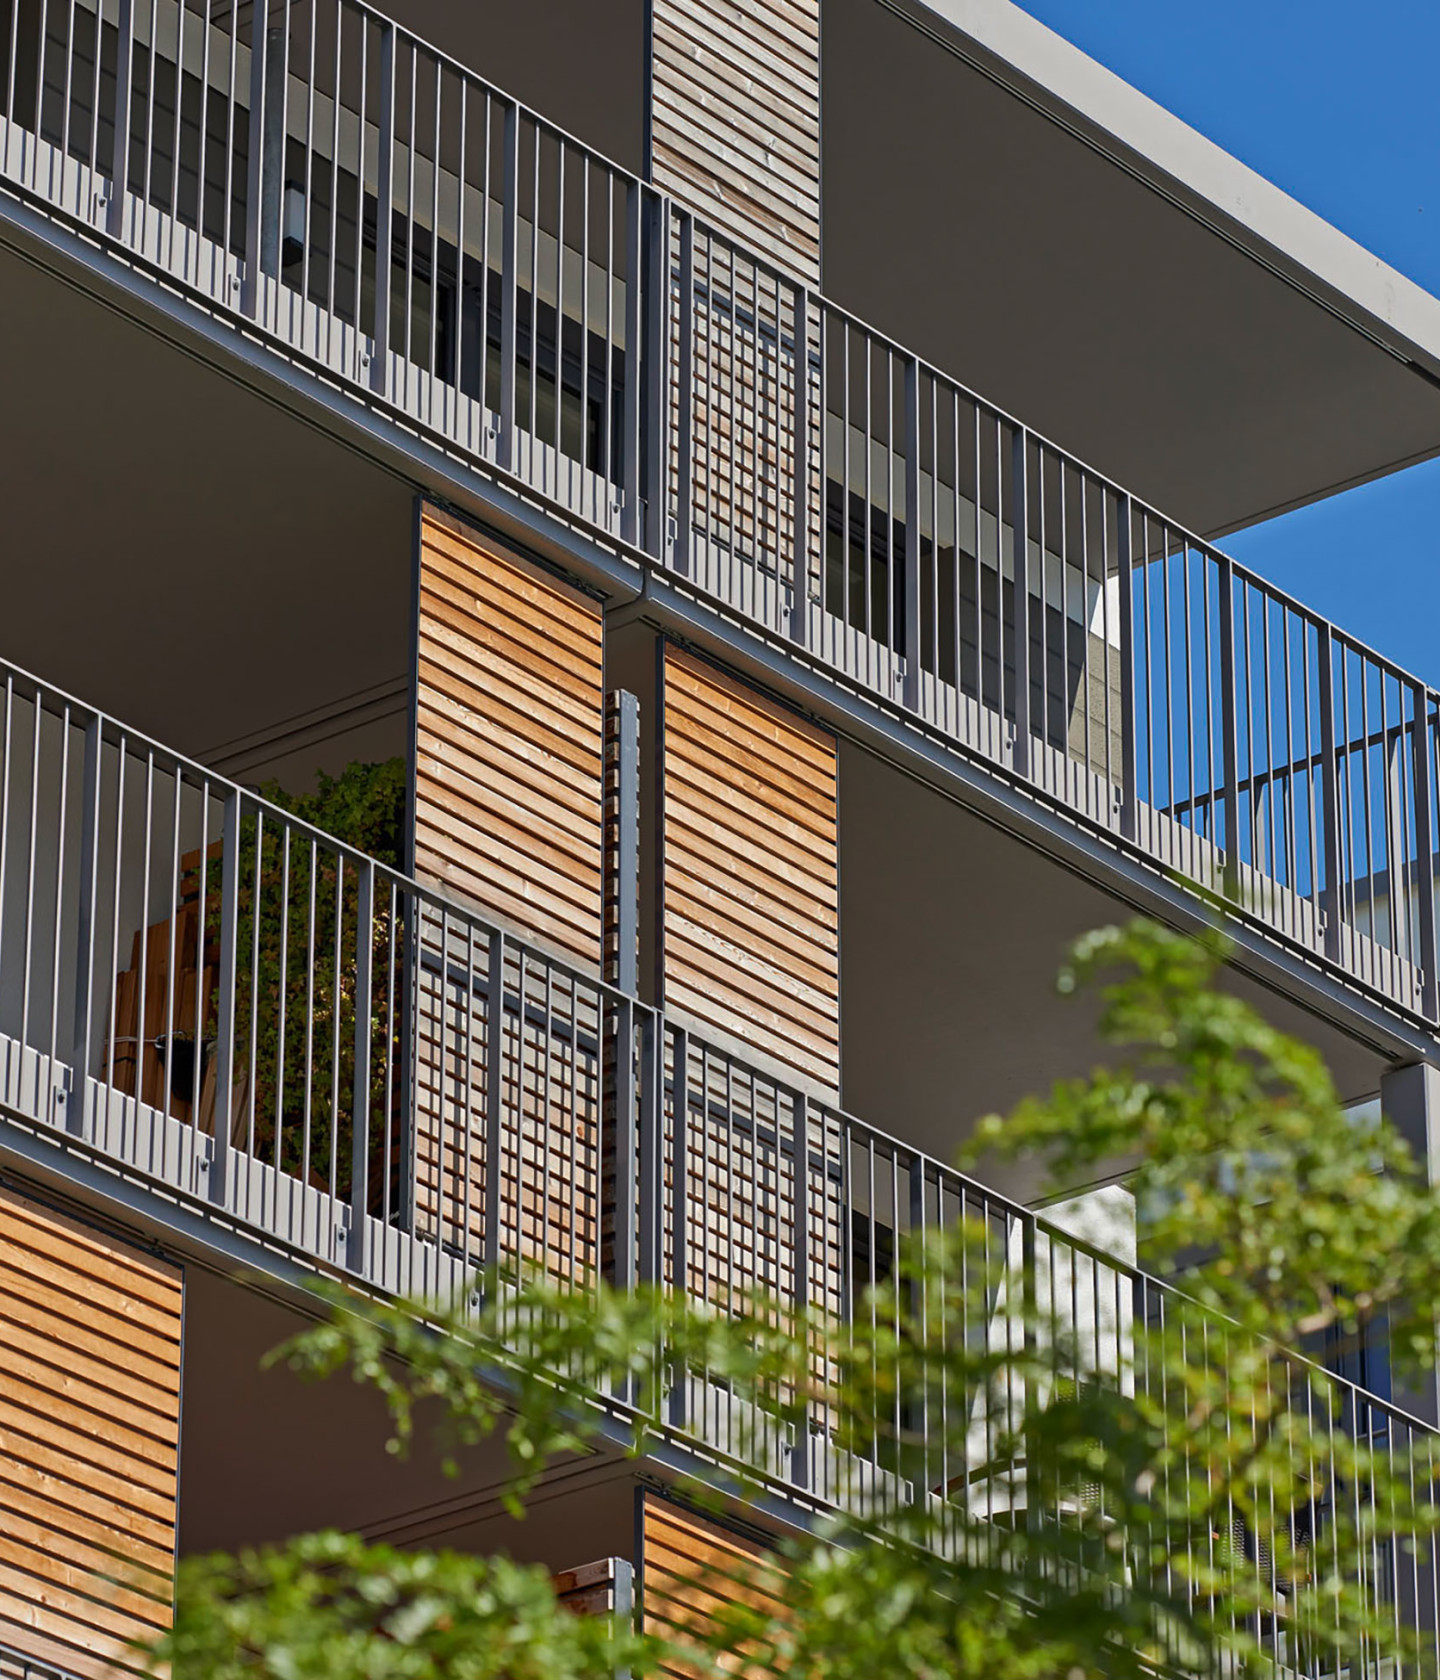 Foto: Balkonfront Donnersberger Hoefe mit Holzelementen und viel Grün